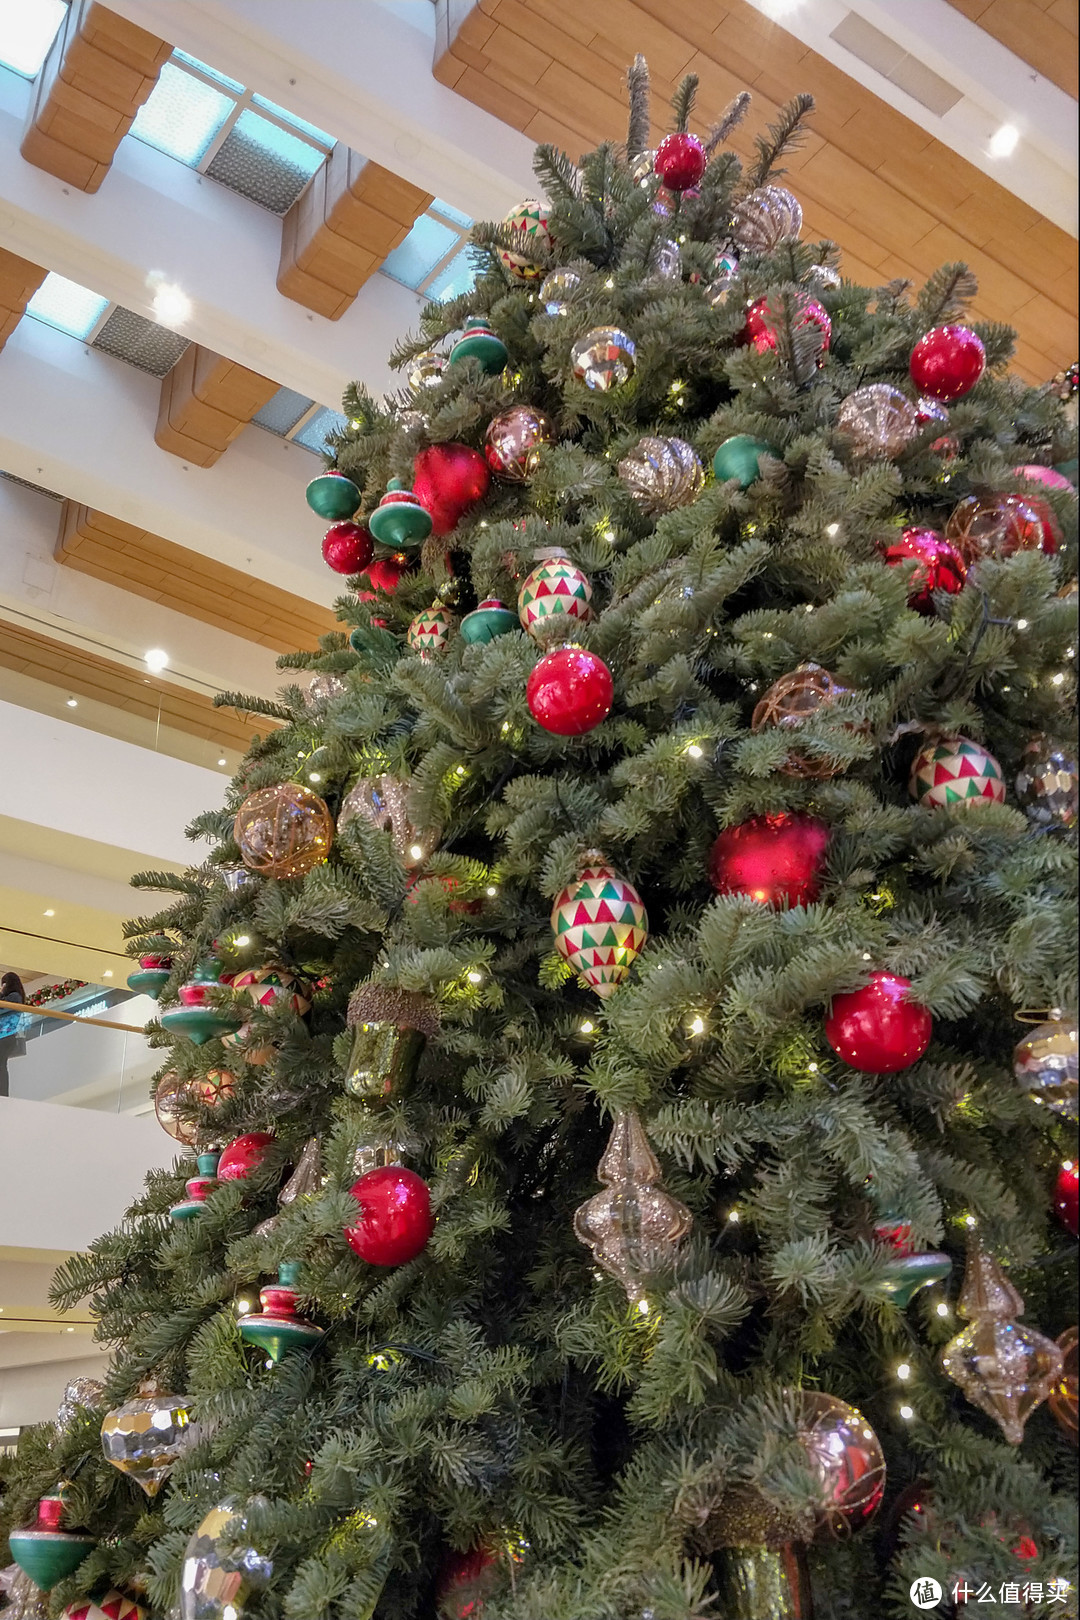 送上一棵闪闪发光的圣诞树，祝大家圣诞节快乐！！🎄🎄🎄